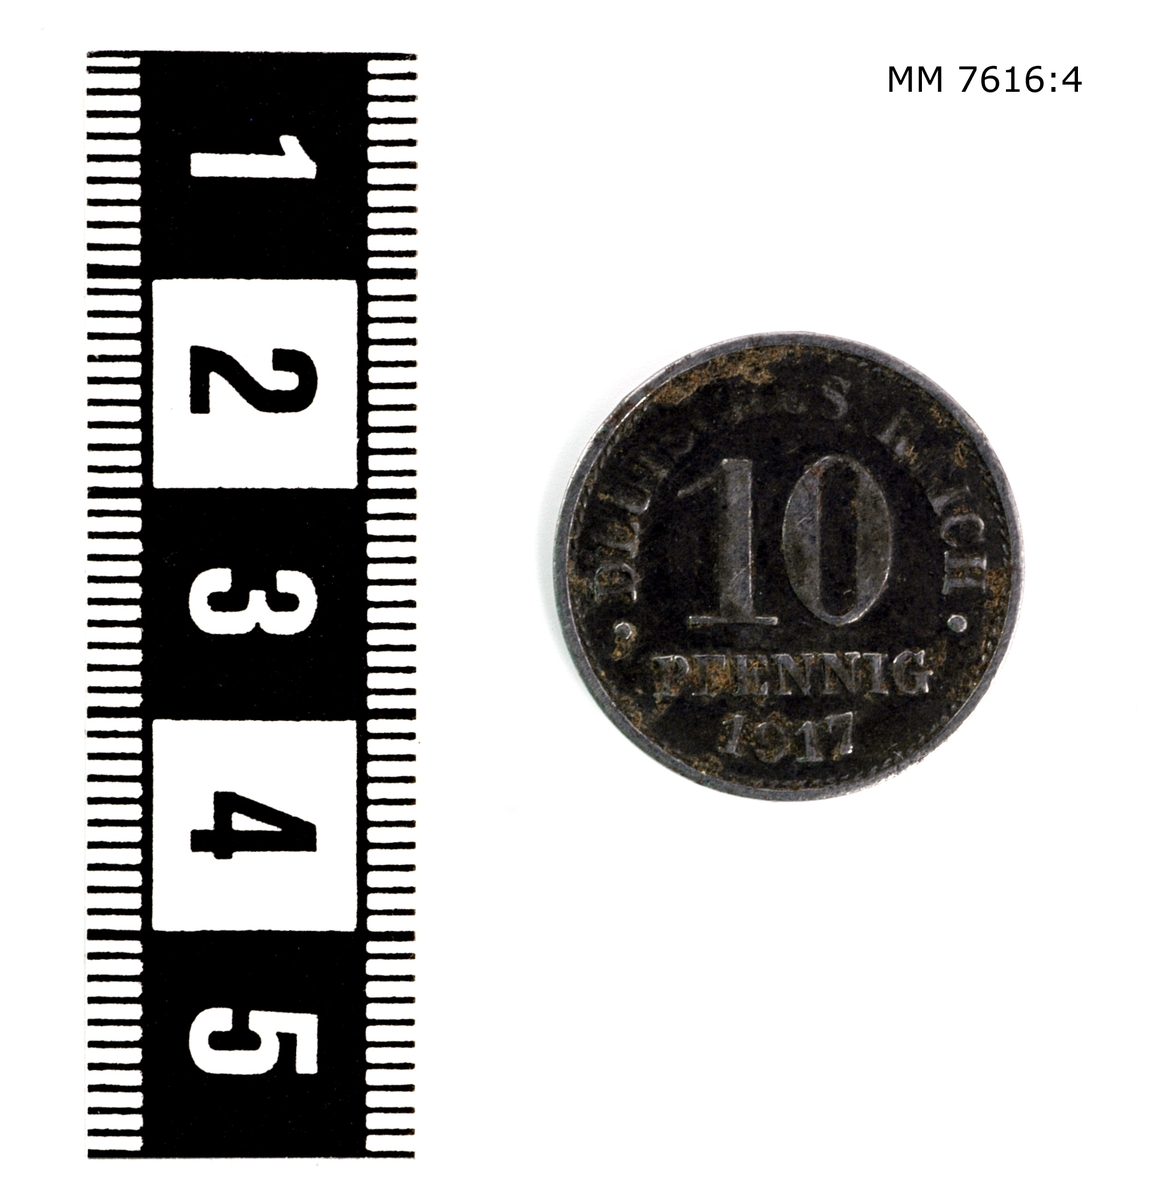 Mynt av järn, 10 pfennig Tyskland. Präglad på ena sidan: figur av en örn, på andra sidan: "Deutsches reich 10 pfennig 1917".